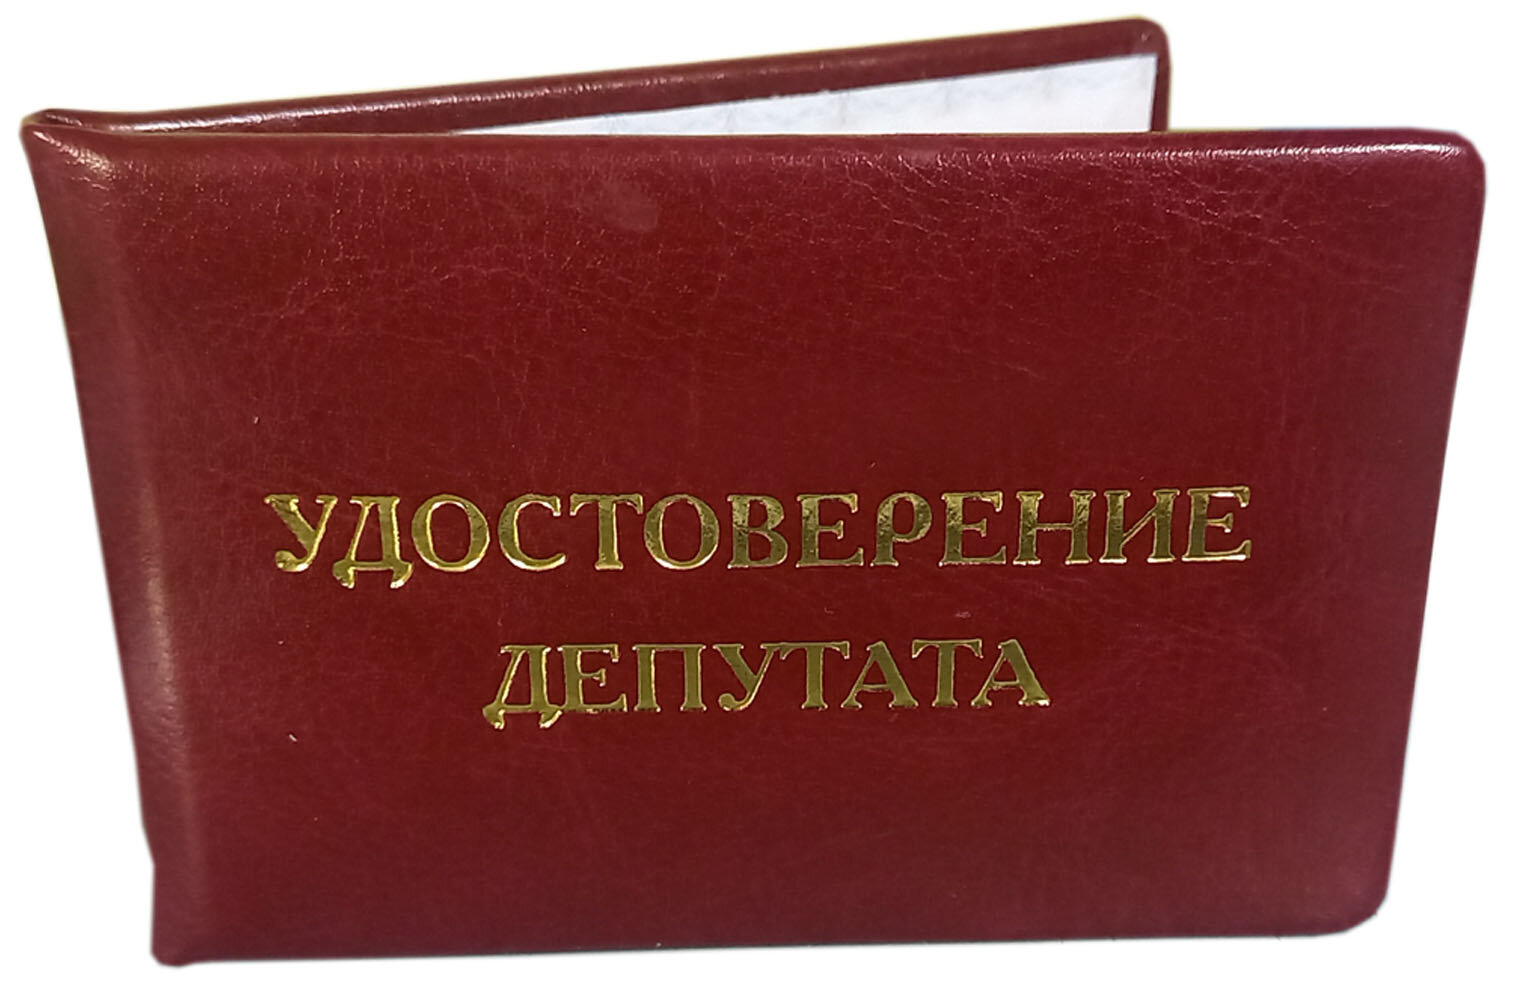 Бланк удостоверения депутата мягкое дутое (кож. зам.) цветная вклейка